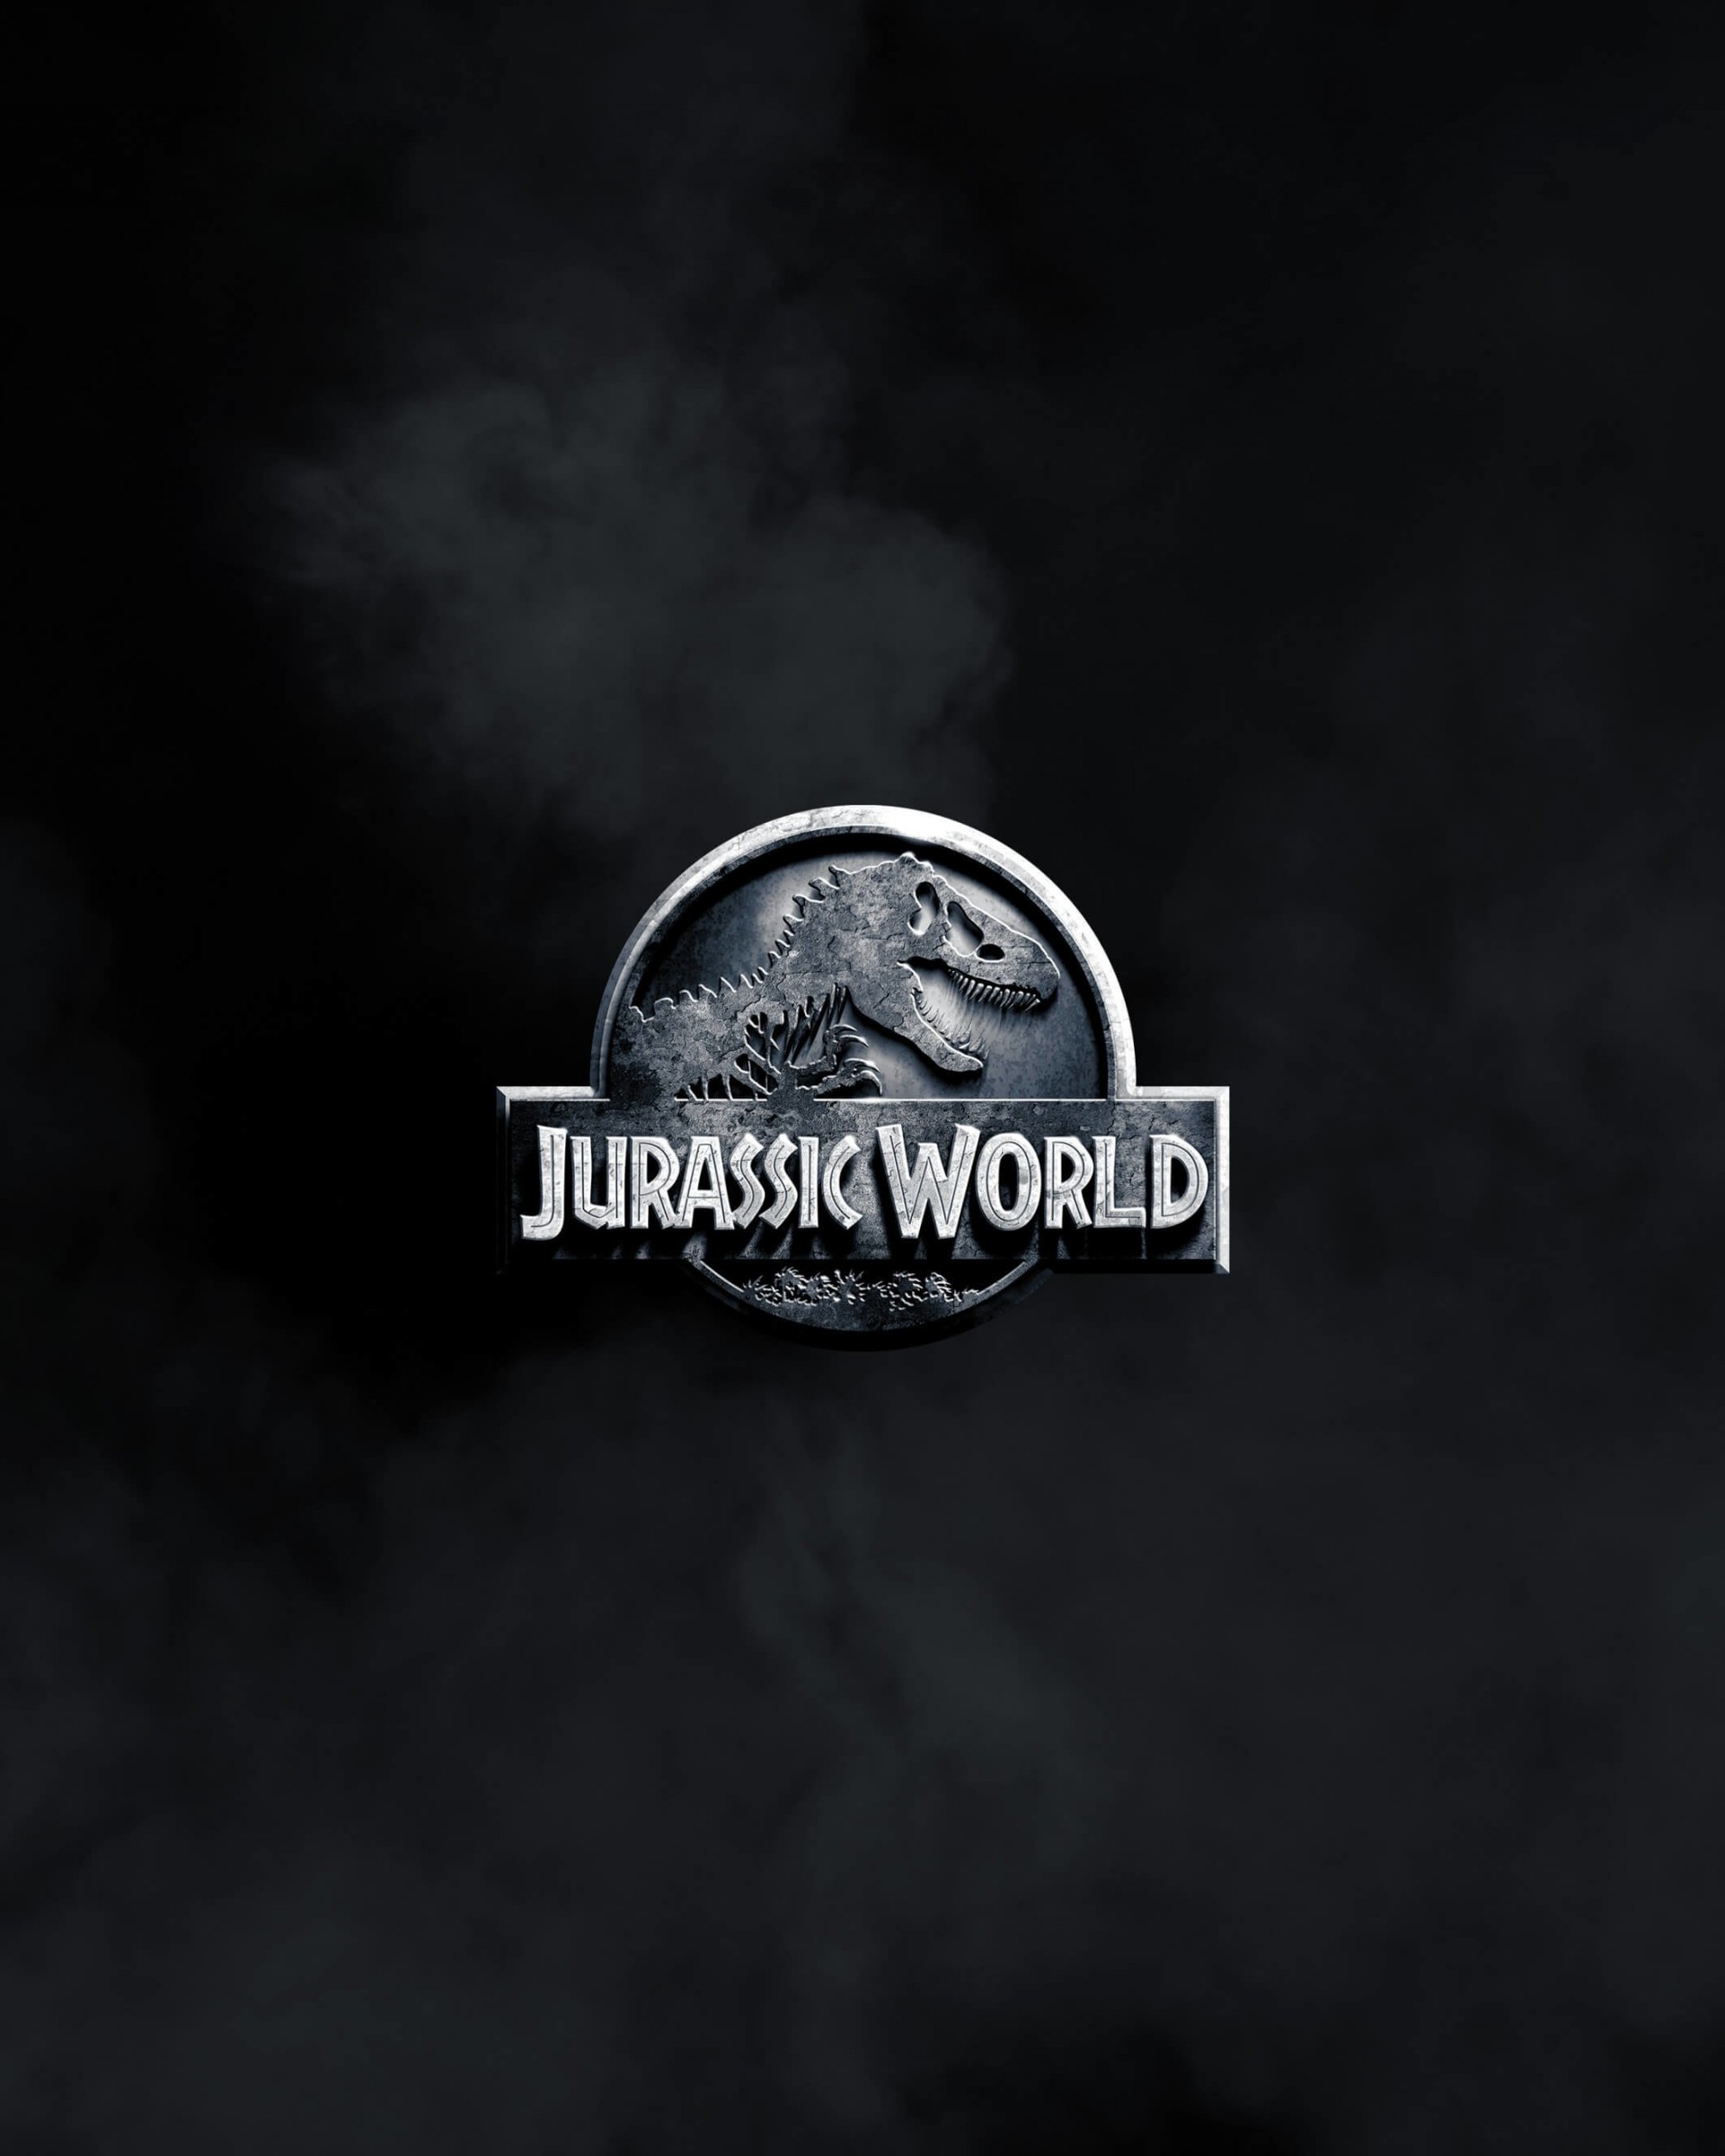 Download Jurassic World HD wallpaper for Nexus 7 - HDwallpapers.net